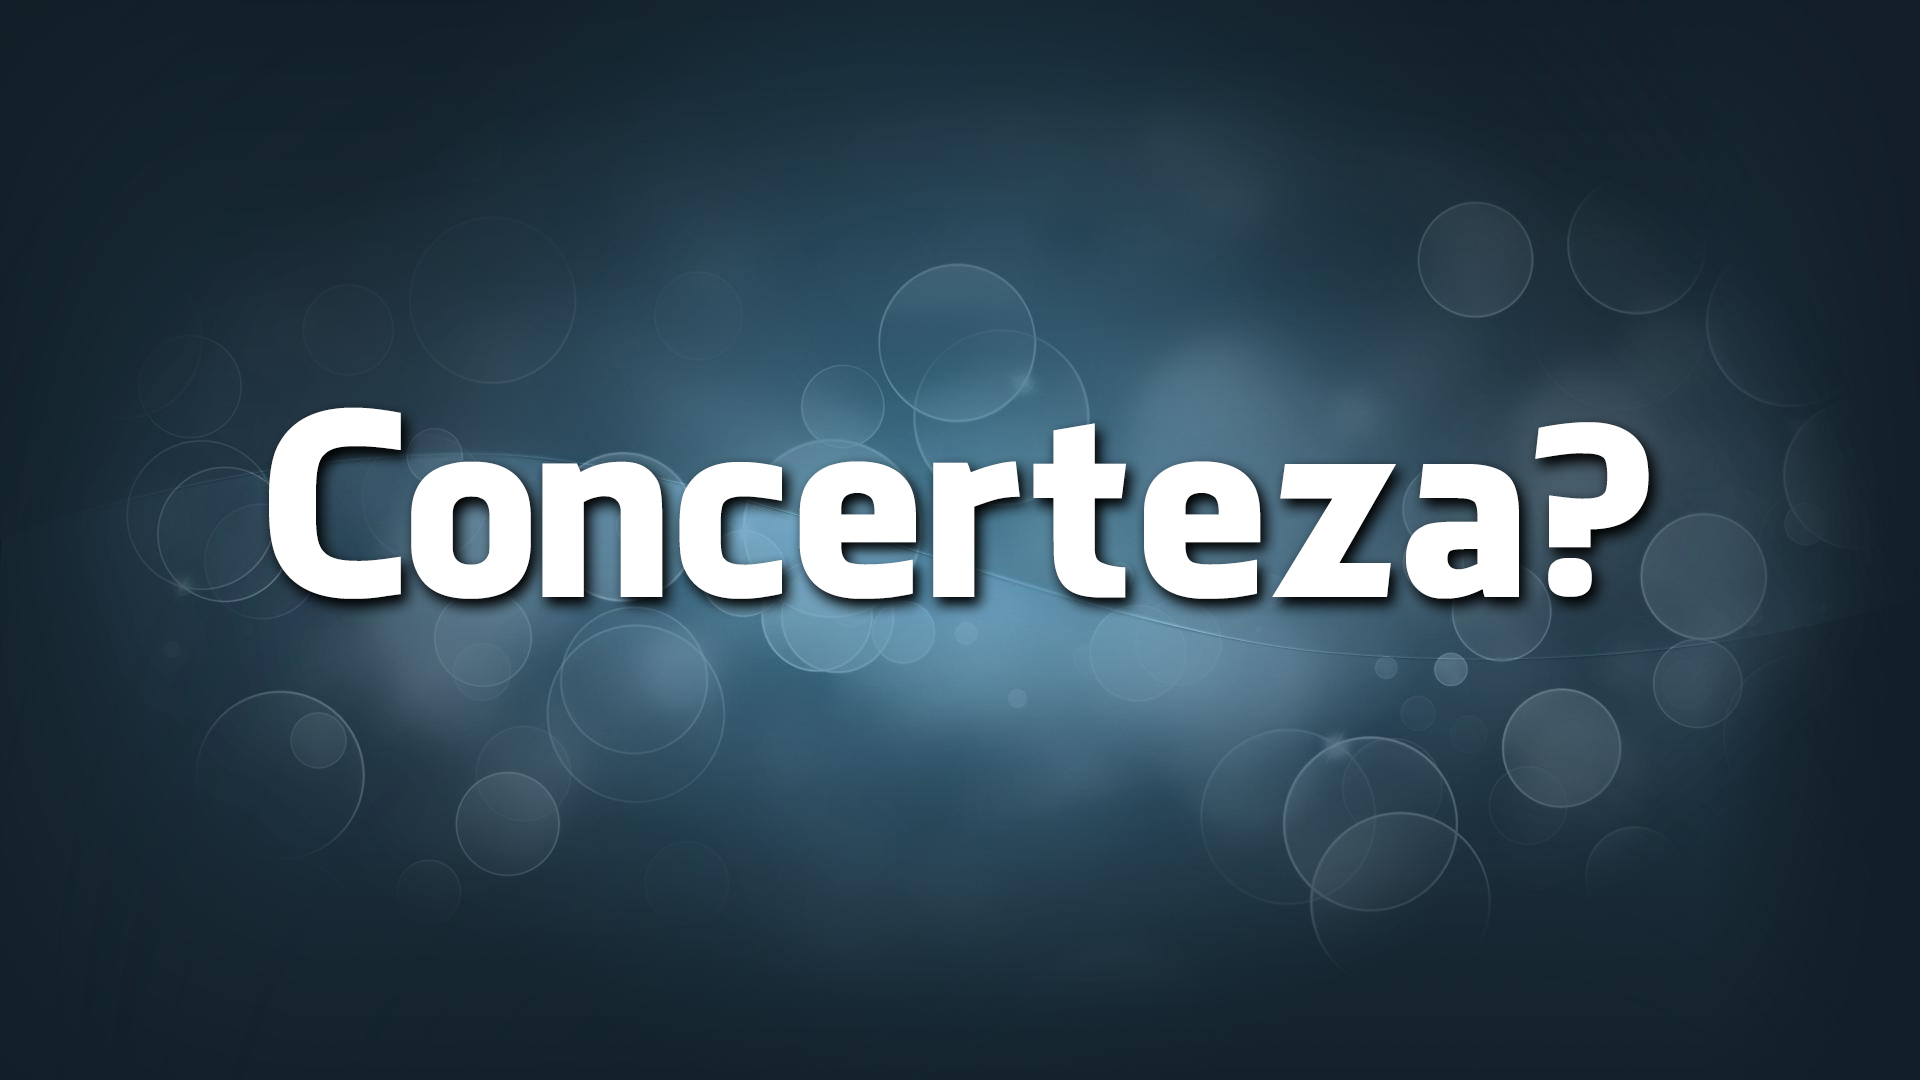 «Concerteza» é um erro de português?